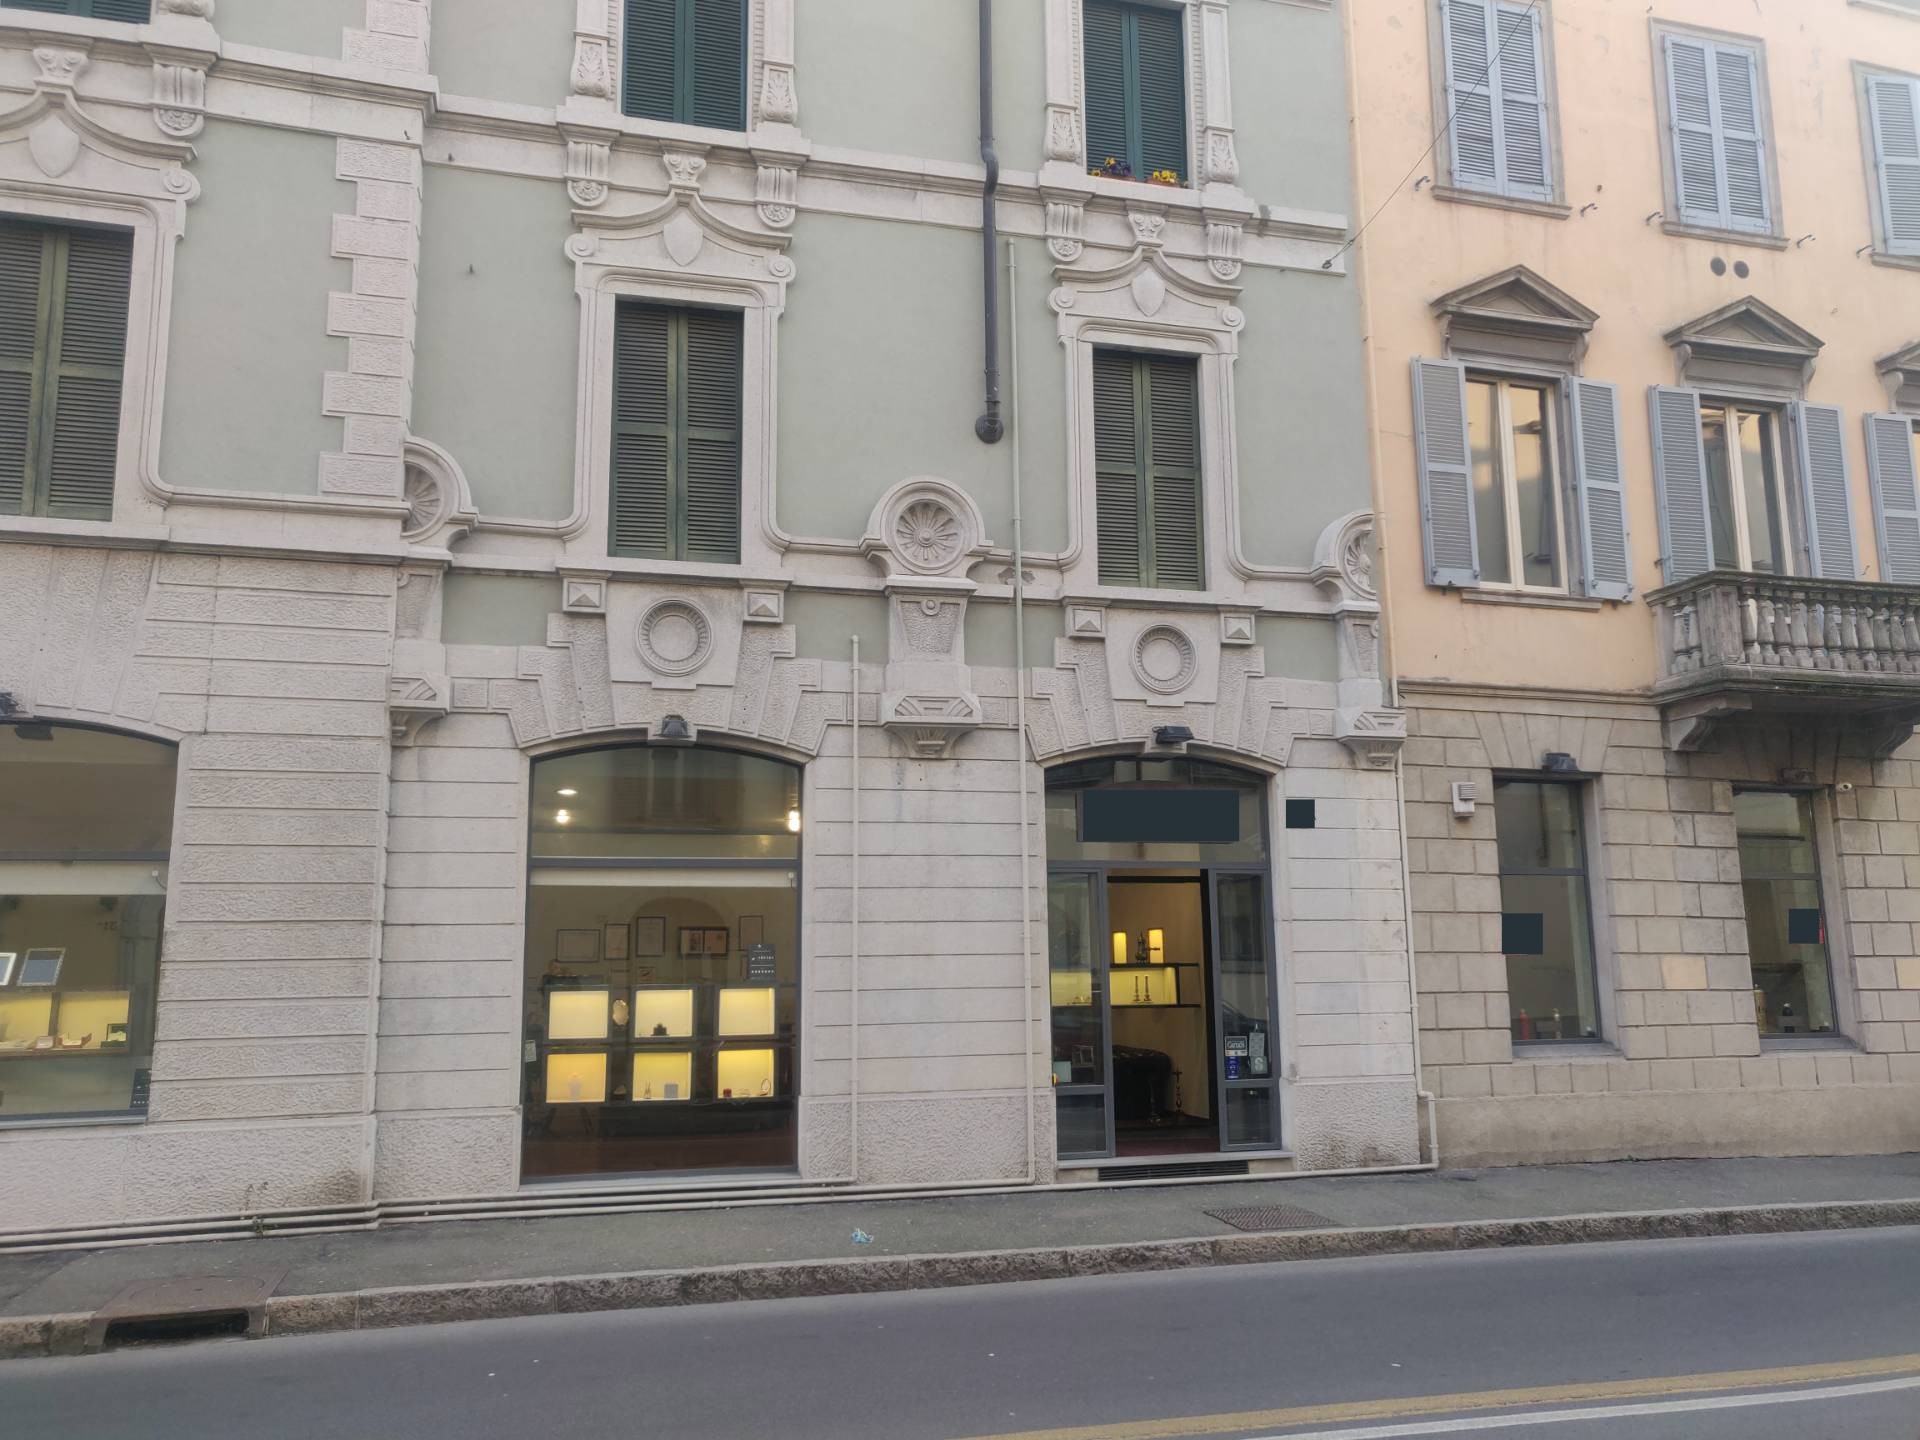 Locale commerciale in affitto a Bergamo - Zona: Centrale